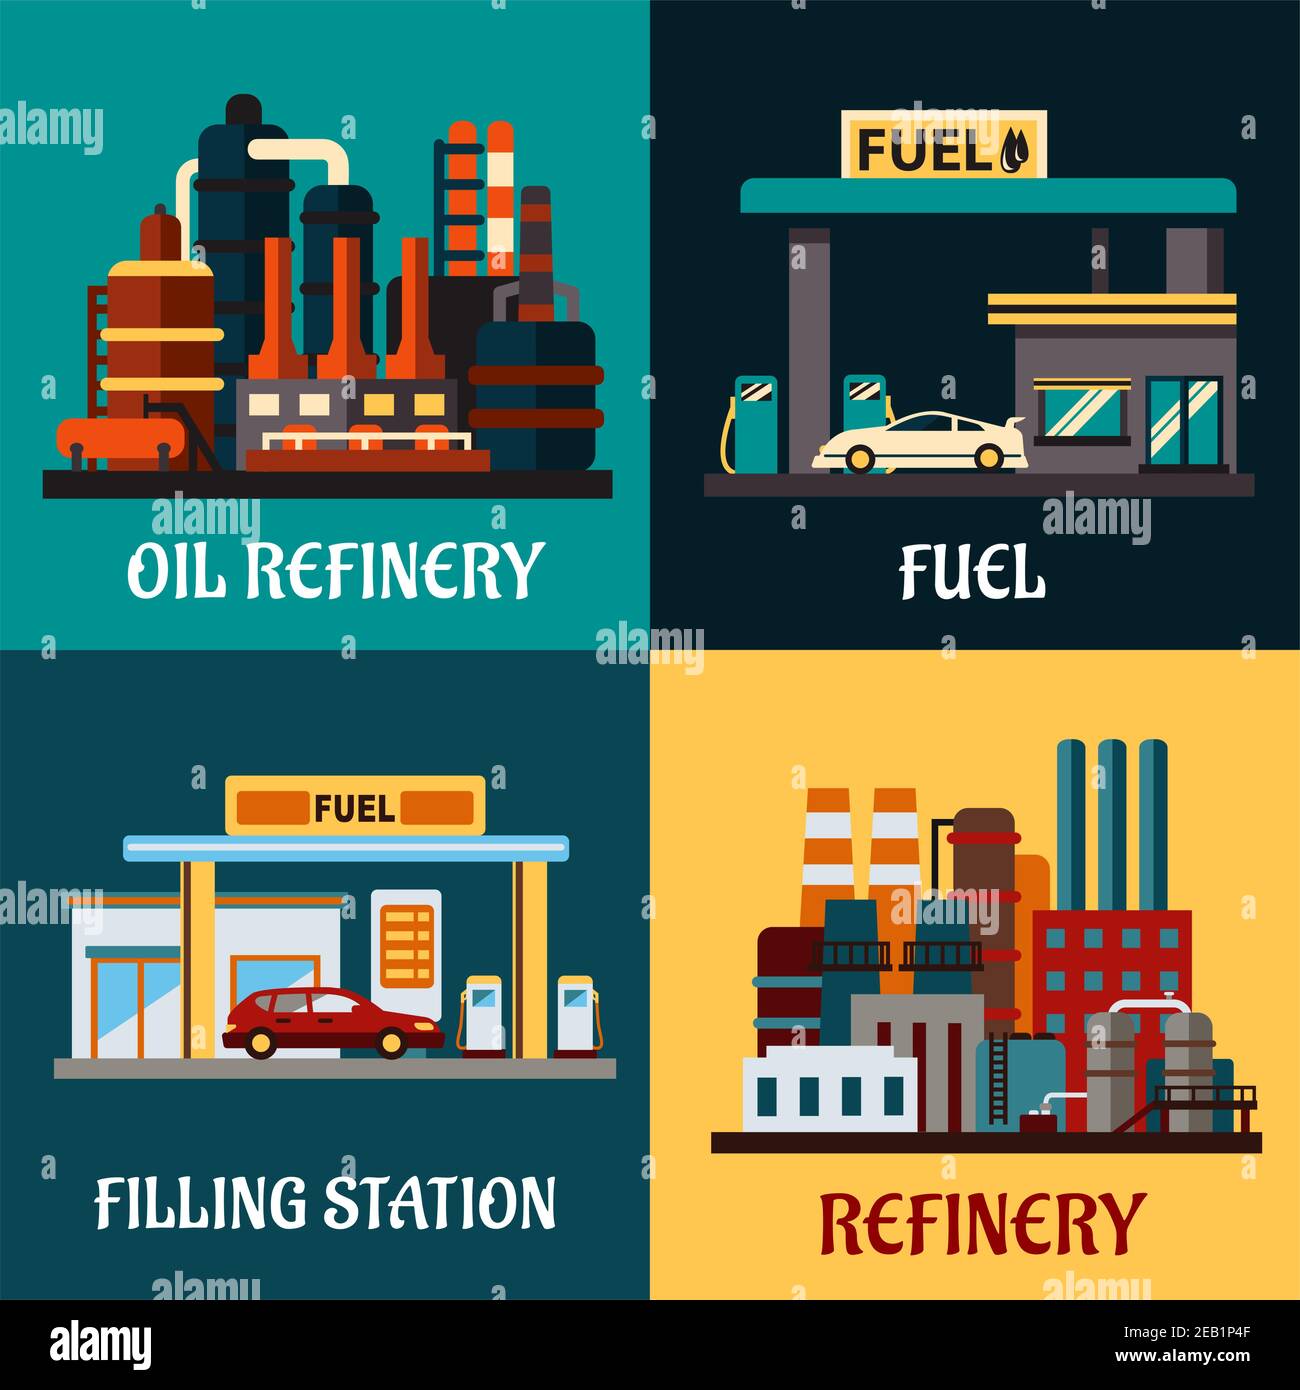 Les concepts des usines de raffinerie de pétrole et des stations-service sont de style plat et montrent les stations-service de bord de route avec des voitures, des pompes et des usines industrielles pour le raffinage o Illustration de Vecteur